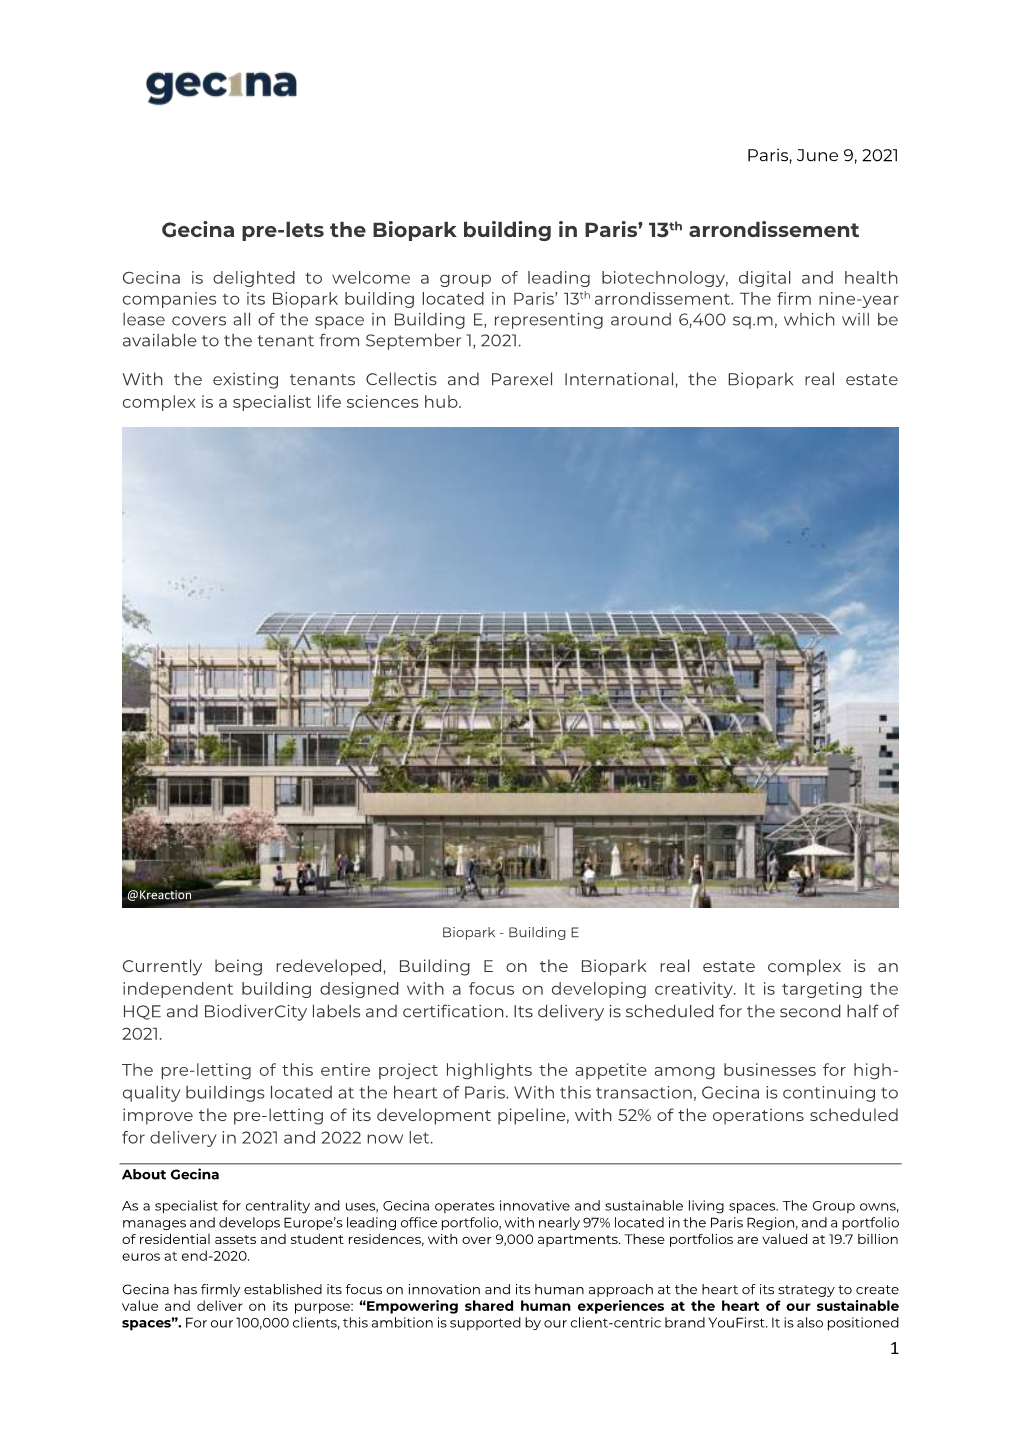 Gecina Pre-Lets the Biopark Building in Paris' 13Th Arrondissement